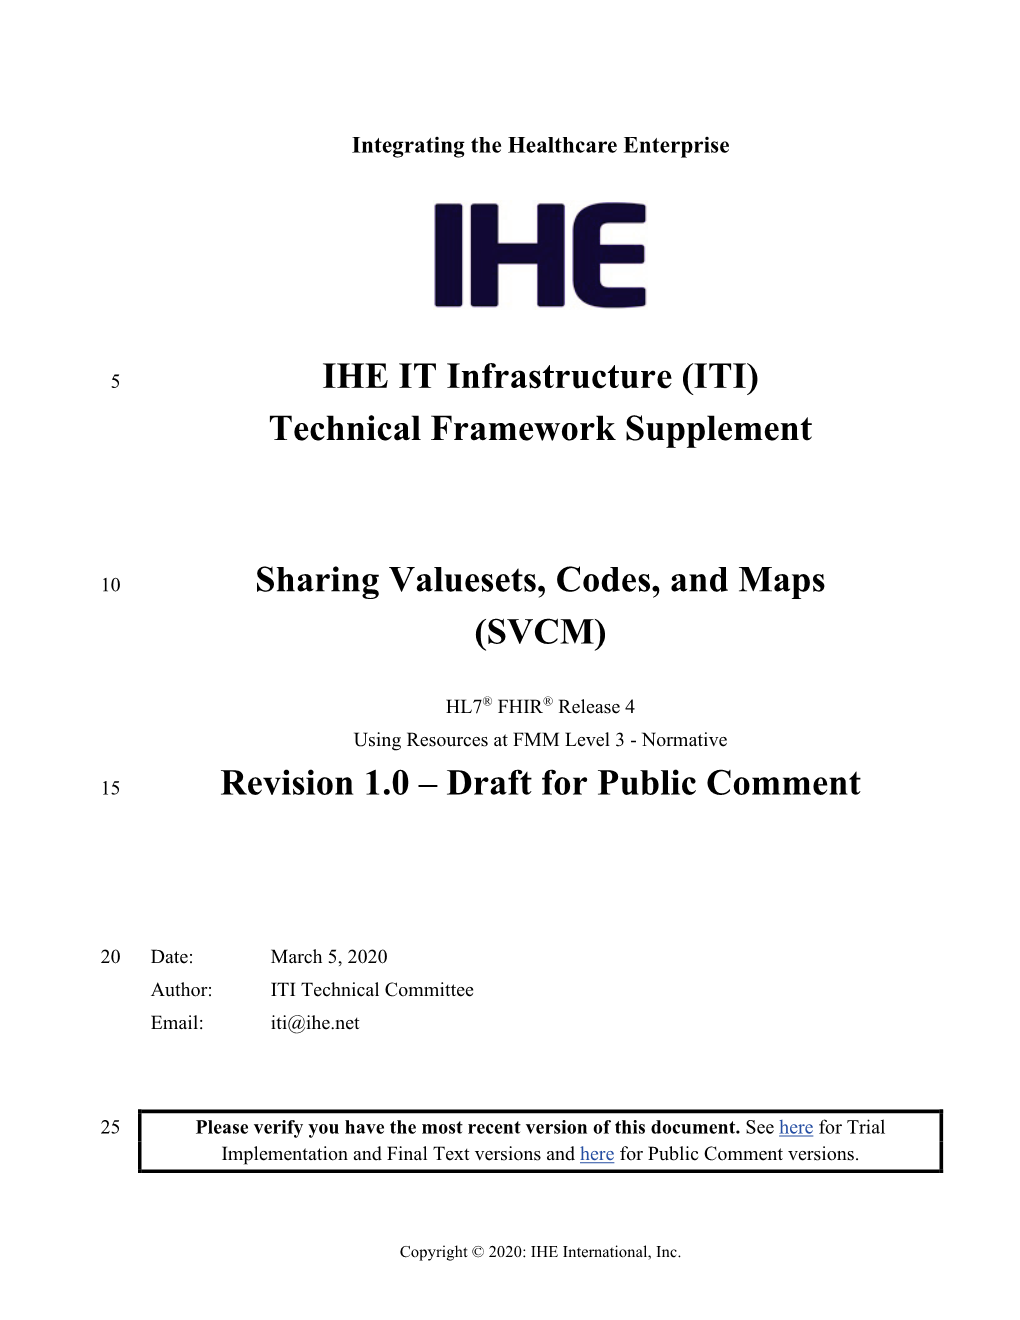 ITI) Technical Framework Supplement